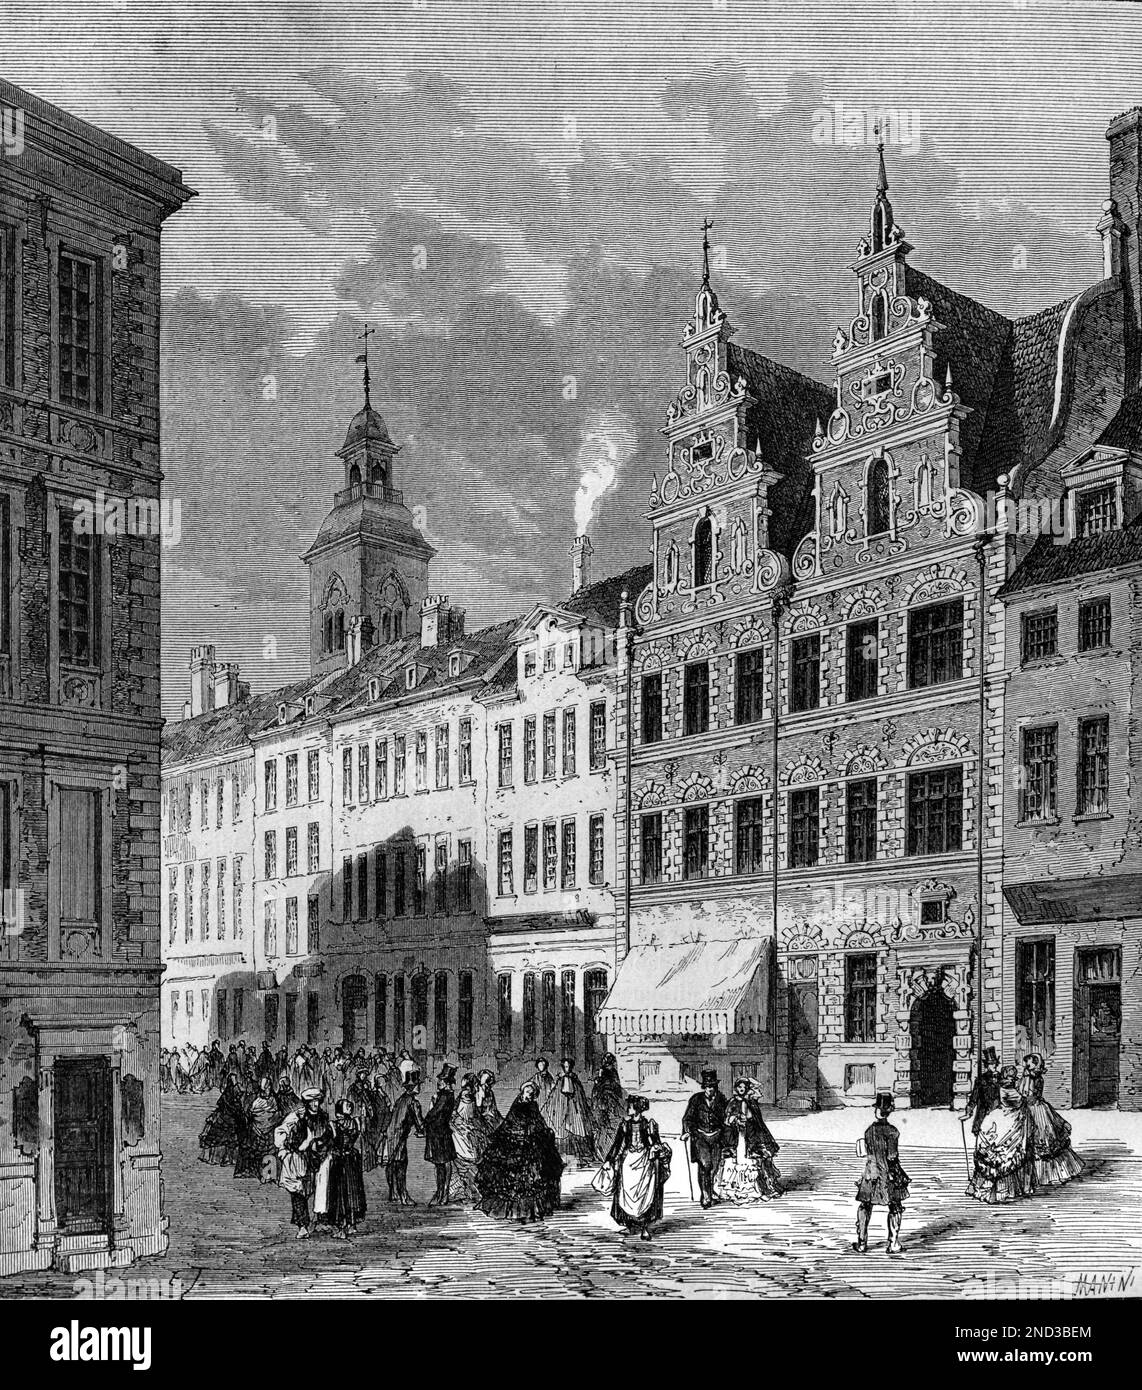 Scène de rue avec marché Amager et maison de ville Renaissance, connue sous le nom de Divecke House, Copenhague Danemark. Gravure ancienne ou illustration 1862 Banque D'Images